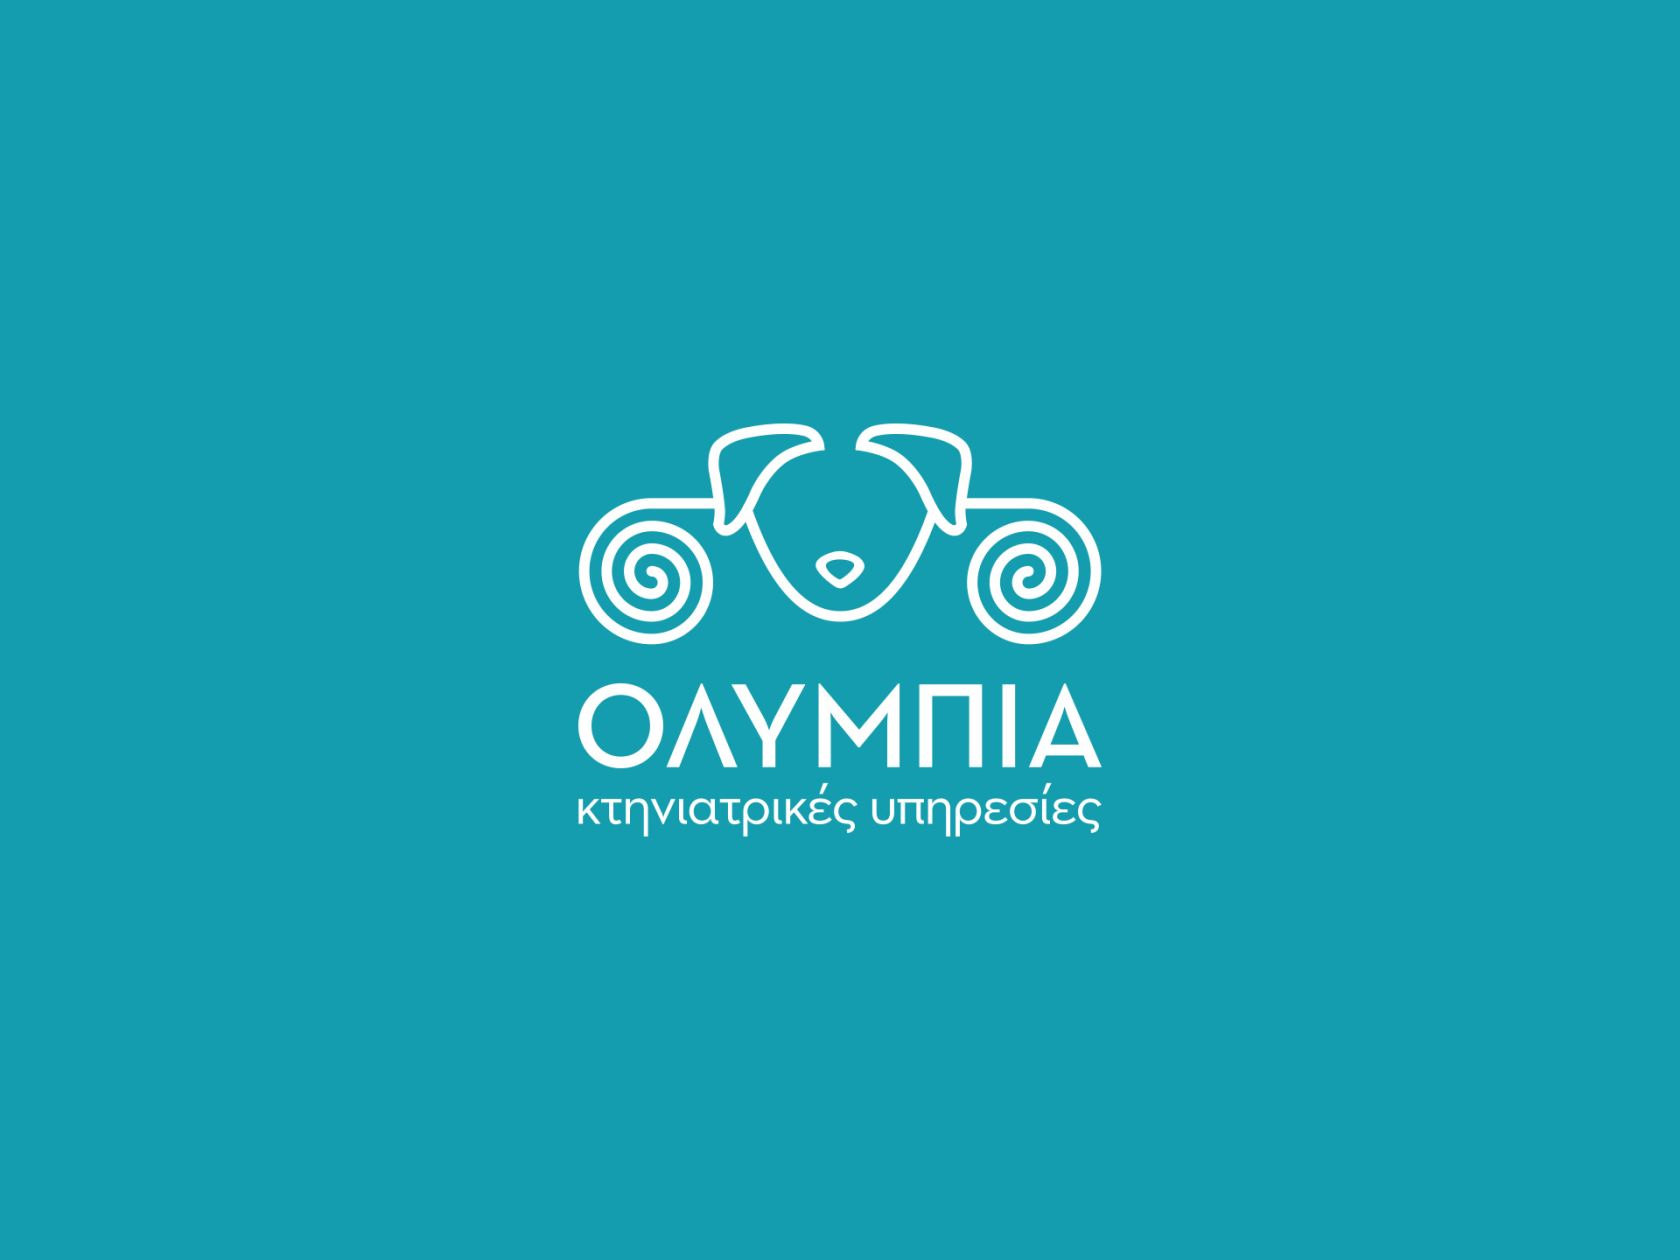 olympia-veterinary-services-logo-02